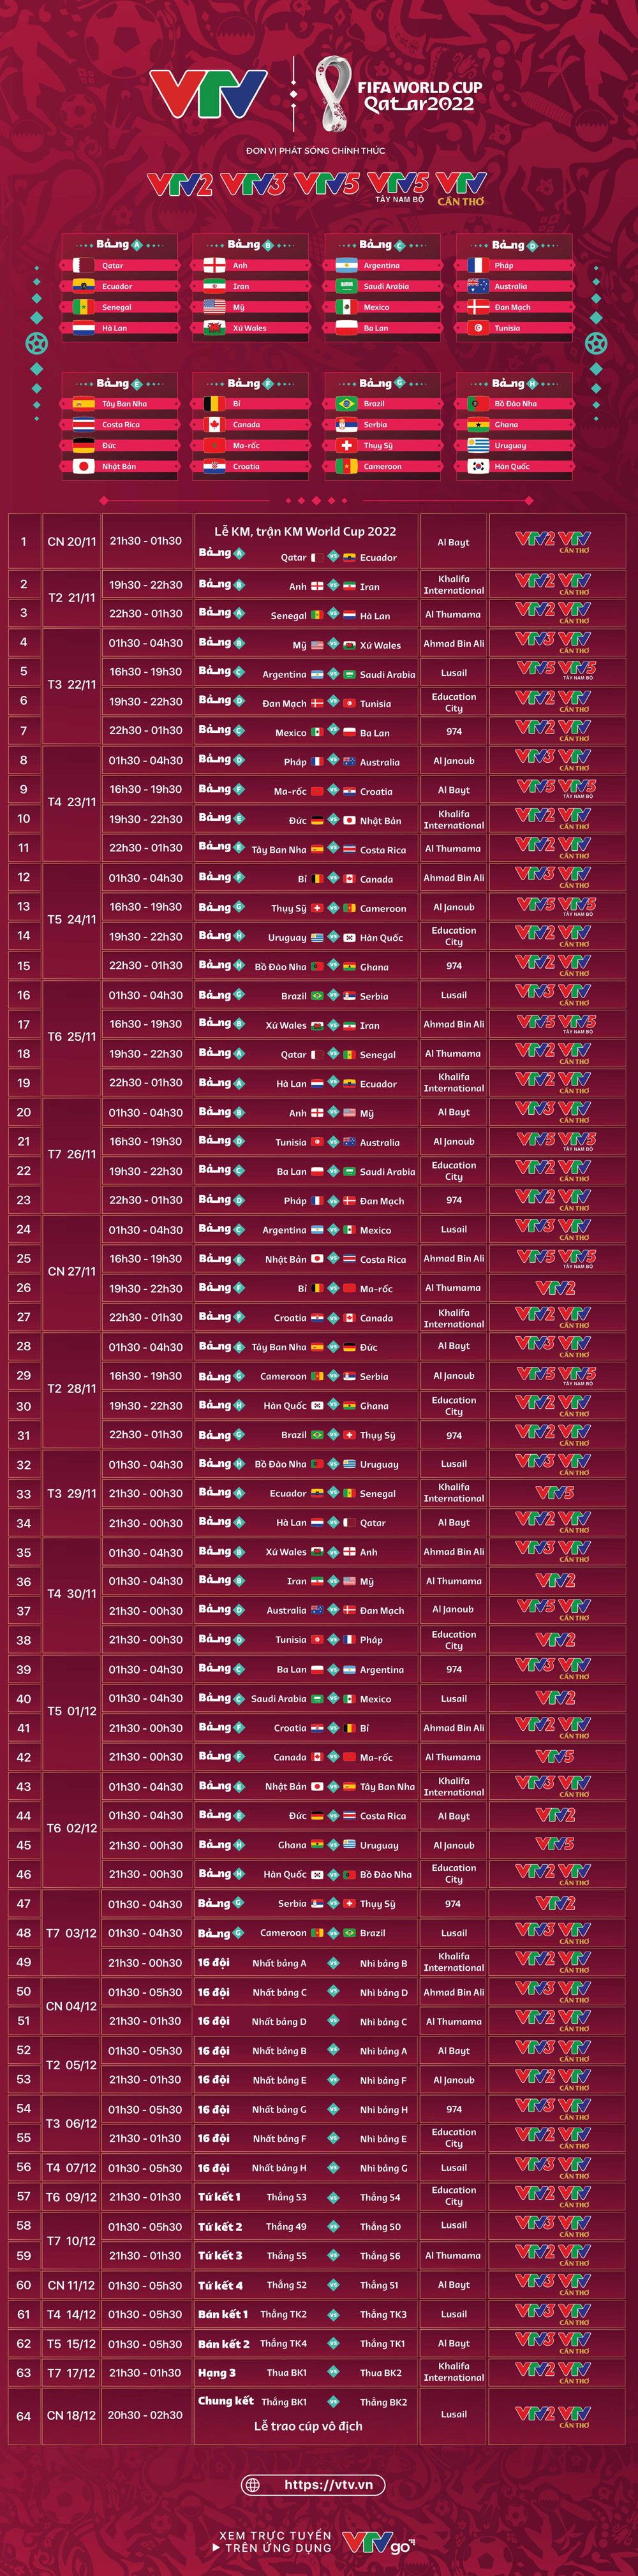 Phú Yên Online Infographics Lịch Thi đấu Và Trực Tiếp 64 Trận đấu World Cup 2022 Trên Vtv 1583